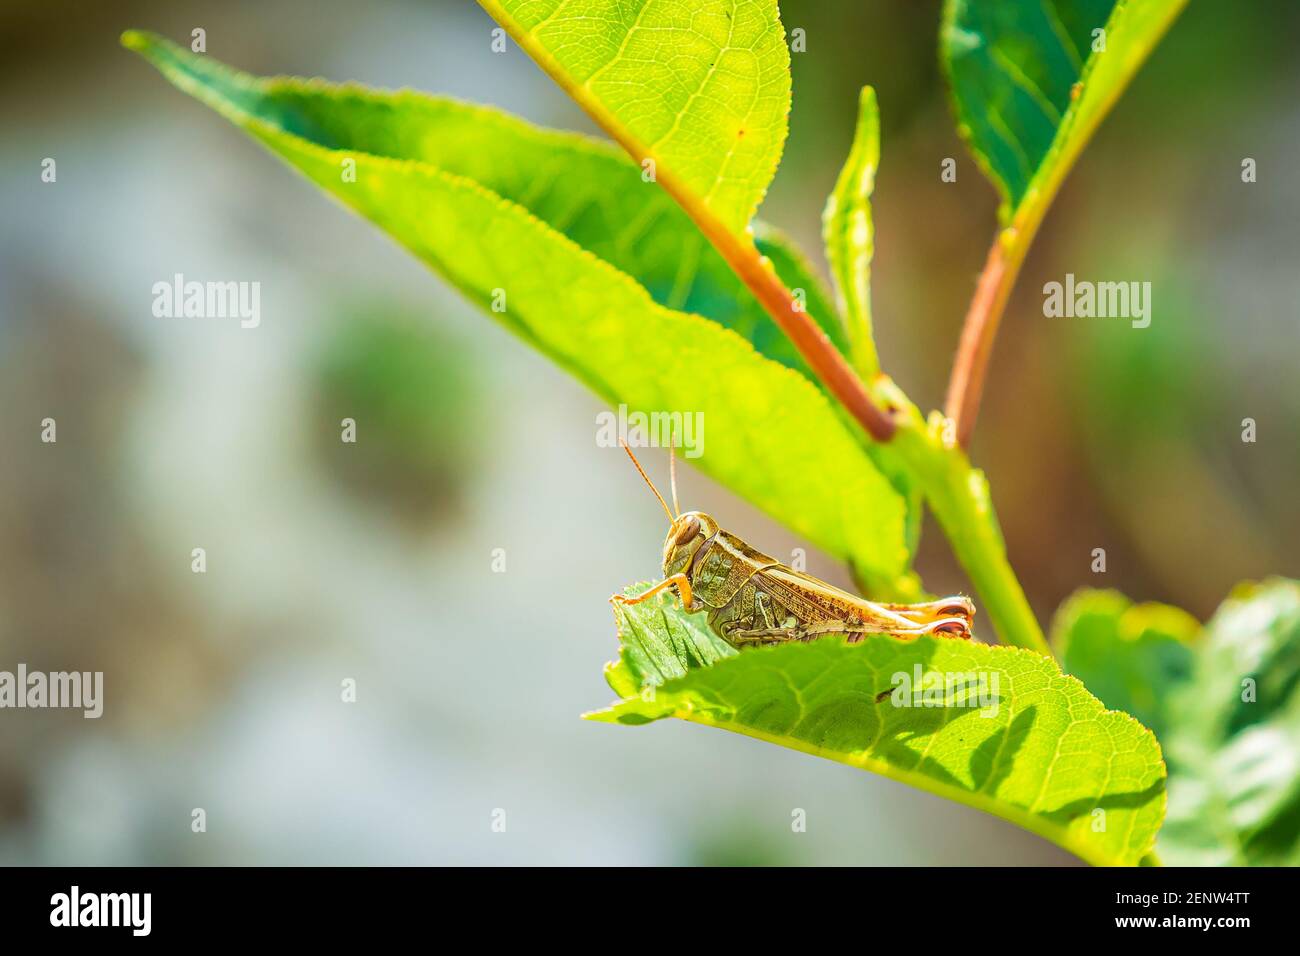 Schöne Grashüpfer Acrididae ruhen im Sonnenlicht auf einer grünen Wiese. Stockfoto